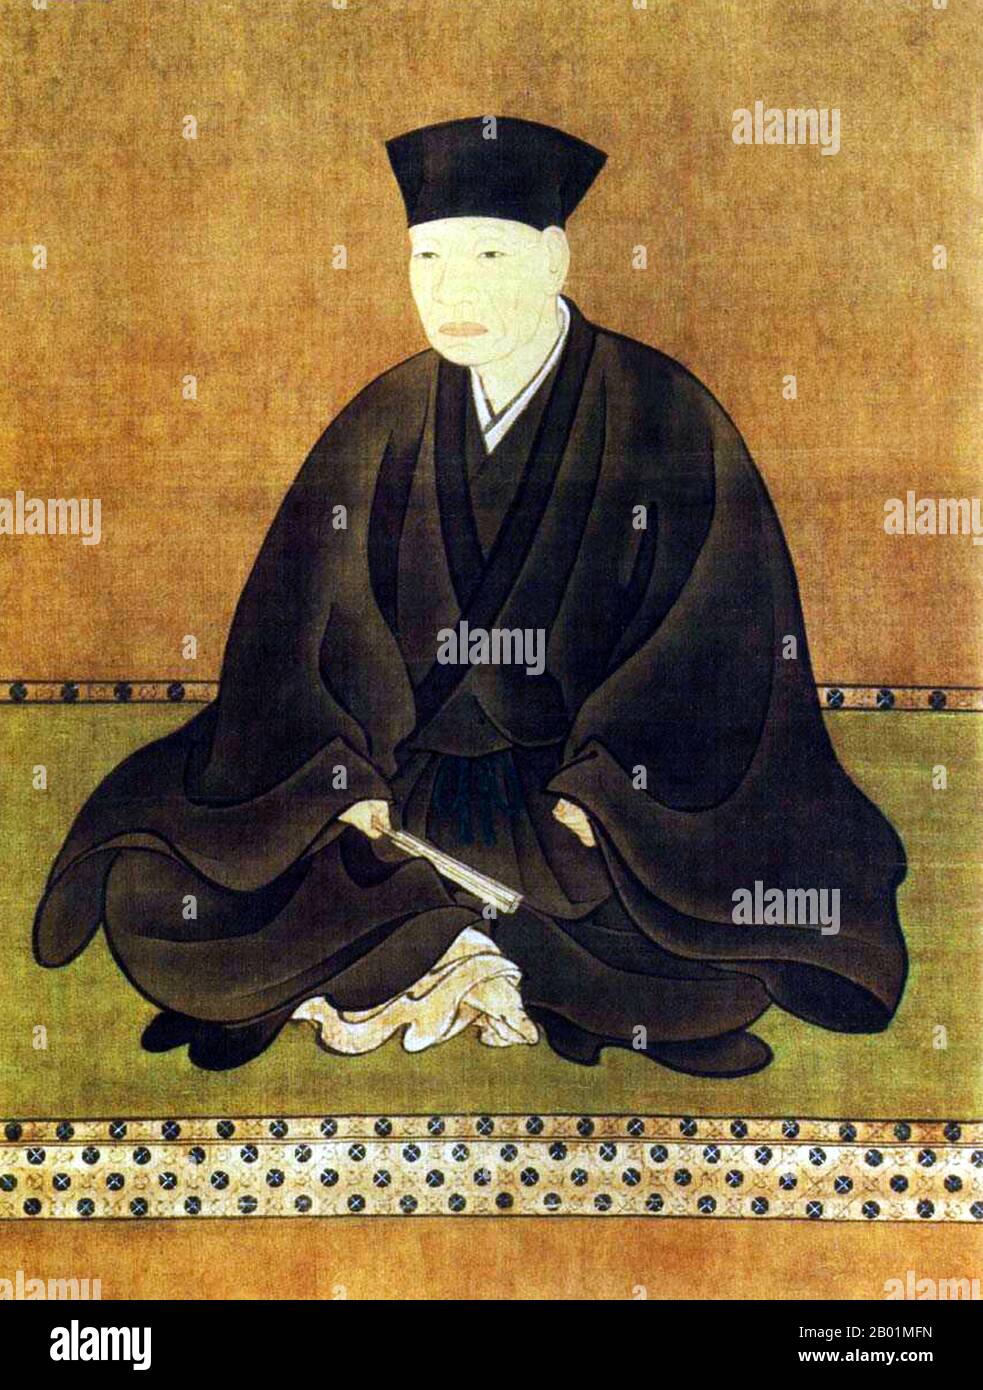 Giappone: SEN No Rikyu (1522 - 21 aprile 1591), maestro del tè giapponese. Tela a rotolo sospesa di Hasegawa Tōhaku (1539 - 19 marzo 1610), fine XVI secolo. SEN no Rikyū, noto anche semplicemente come Sen Rikyū, è considerato la figura storica con la più profonda influenza sul chanoyu, la "via del tè" giapponese, in particolare la tradizione del wabi-cha. Fu anche il primo a sottolineare diversi aspetti chiave della cerimonia, tra cui la semplicità rustica, la prontezza di approccio e l'onestà di sé. Originari del periodo Edo e del periodo Muromachi, questi aspetti della cerimonia del tè persistono ancora oggi. Foto Stock